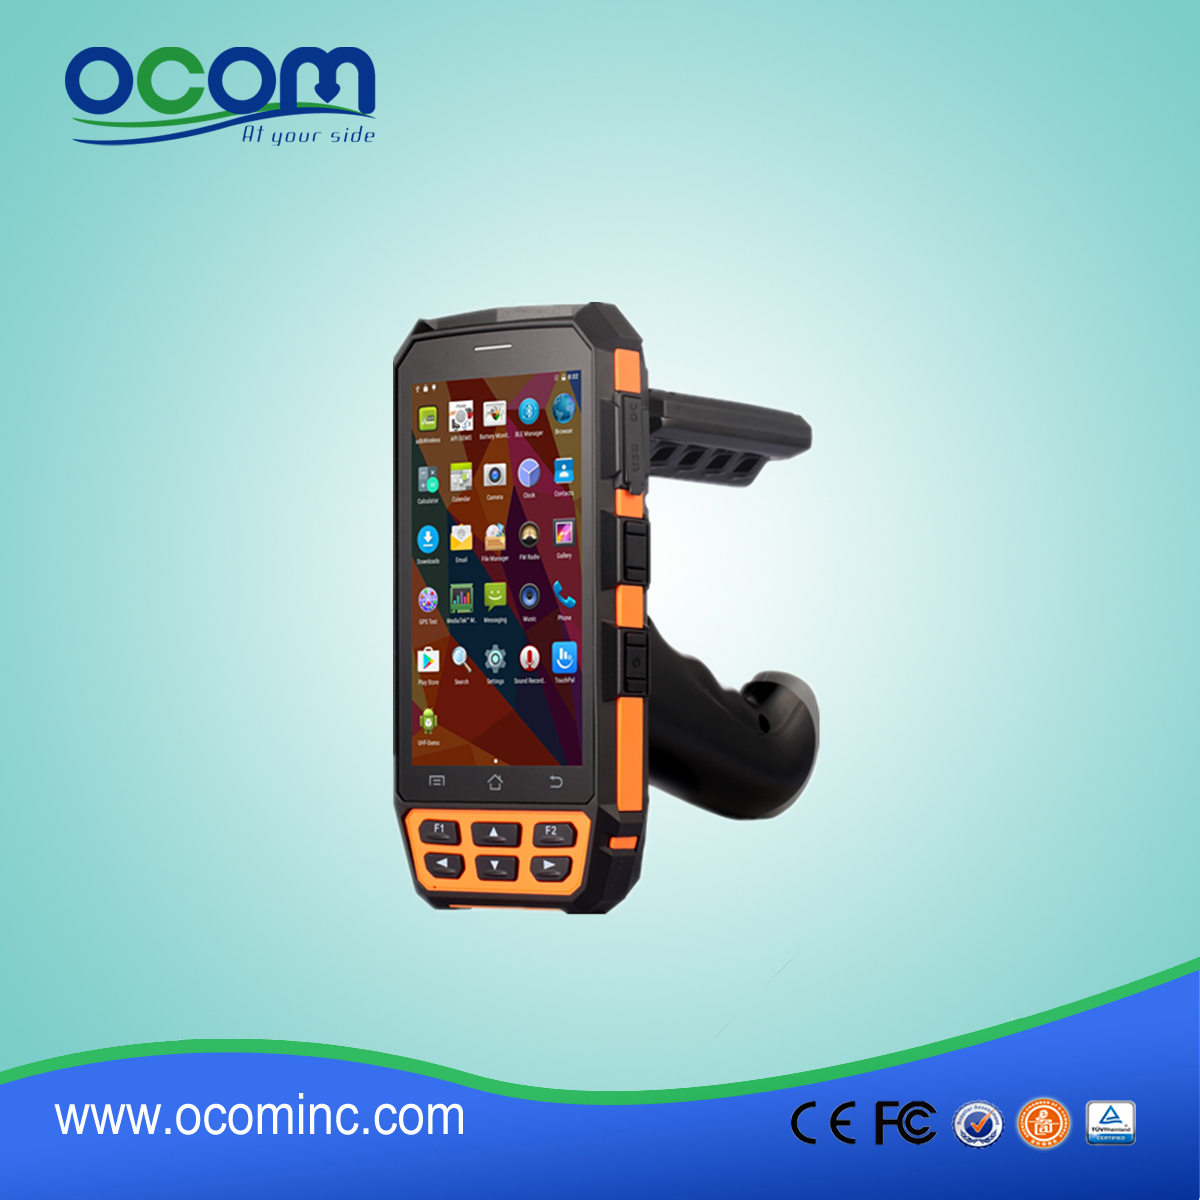 OCBS -D5000 PDA Android industriel robuste avec lecteur d'empreintes digitales pour lecteur de code à barres 2d